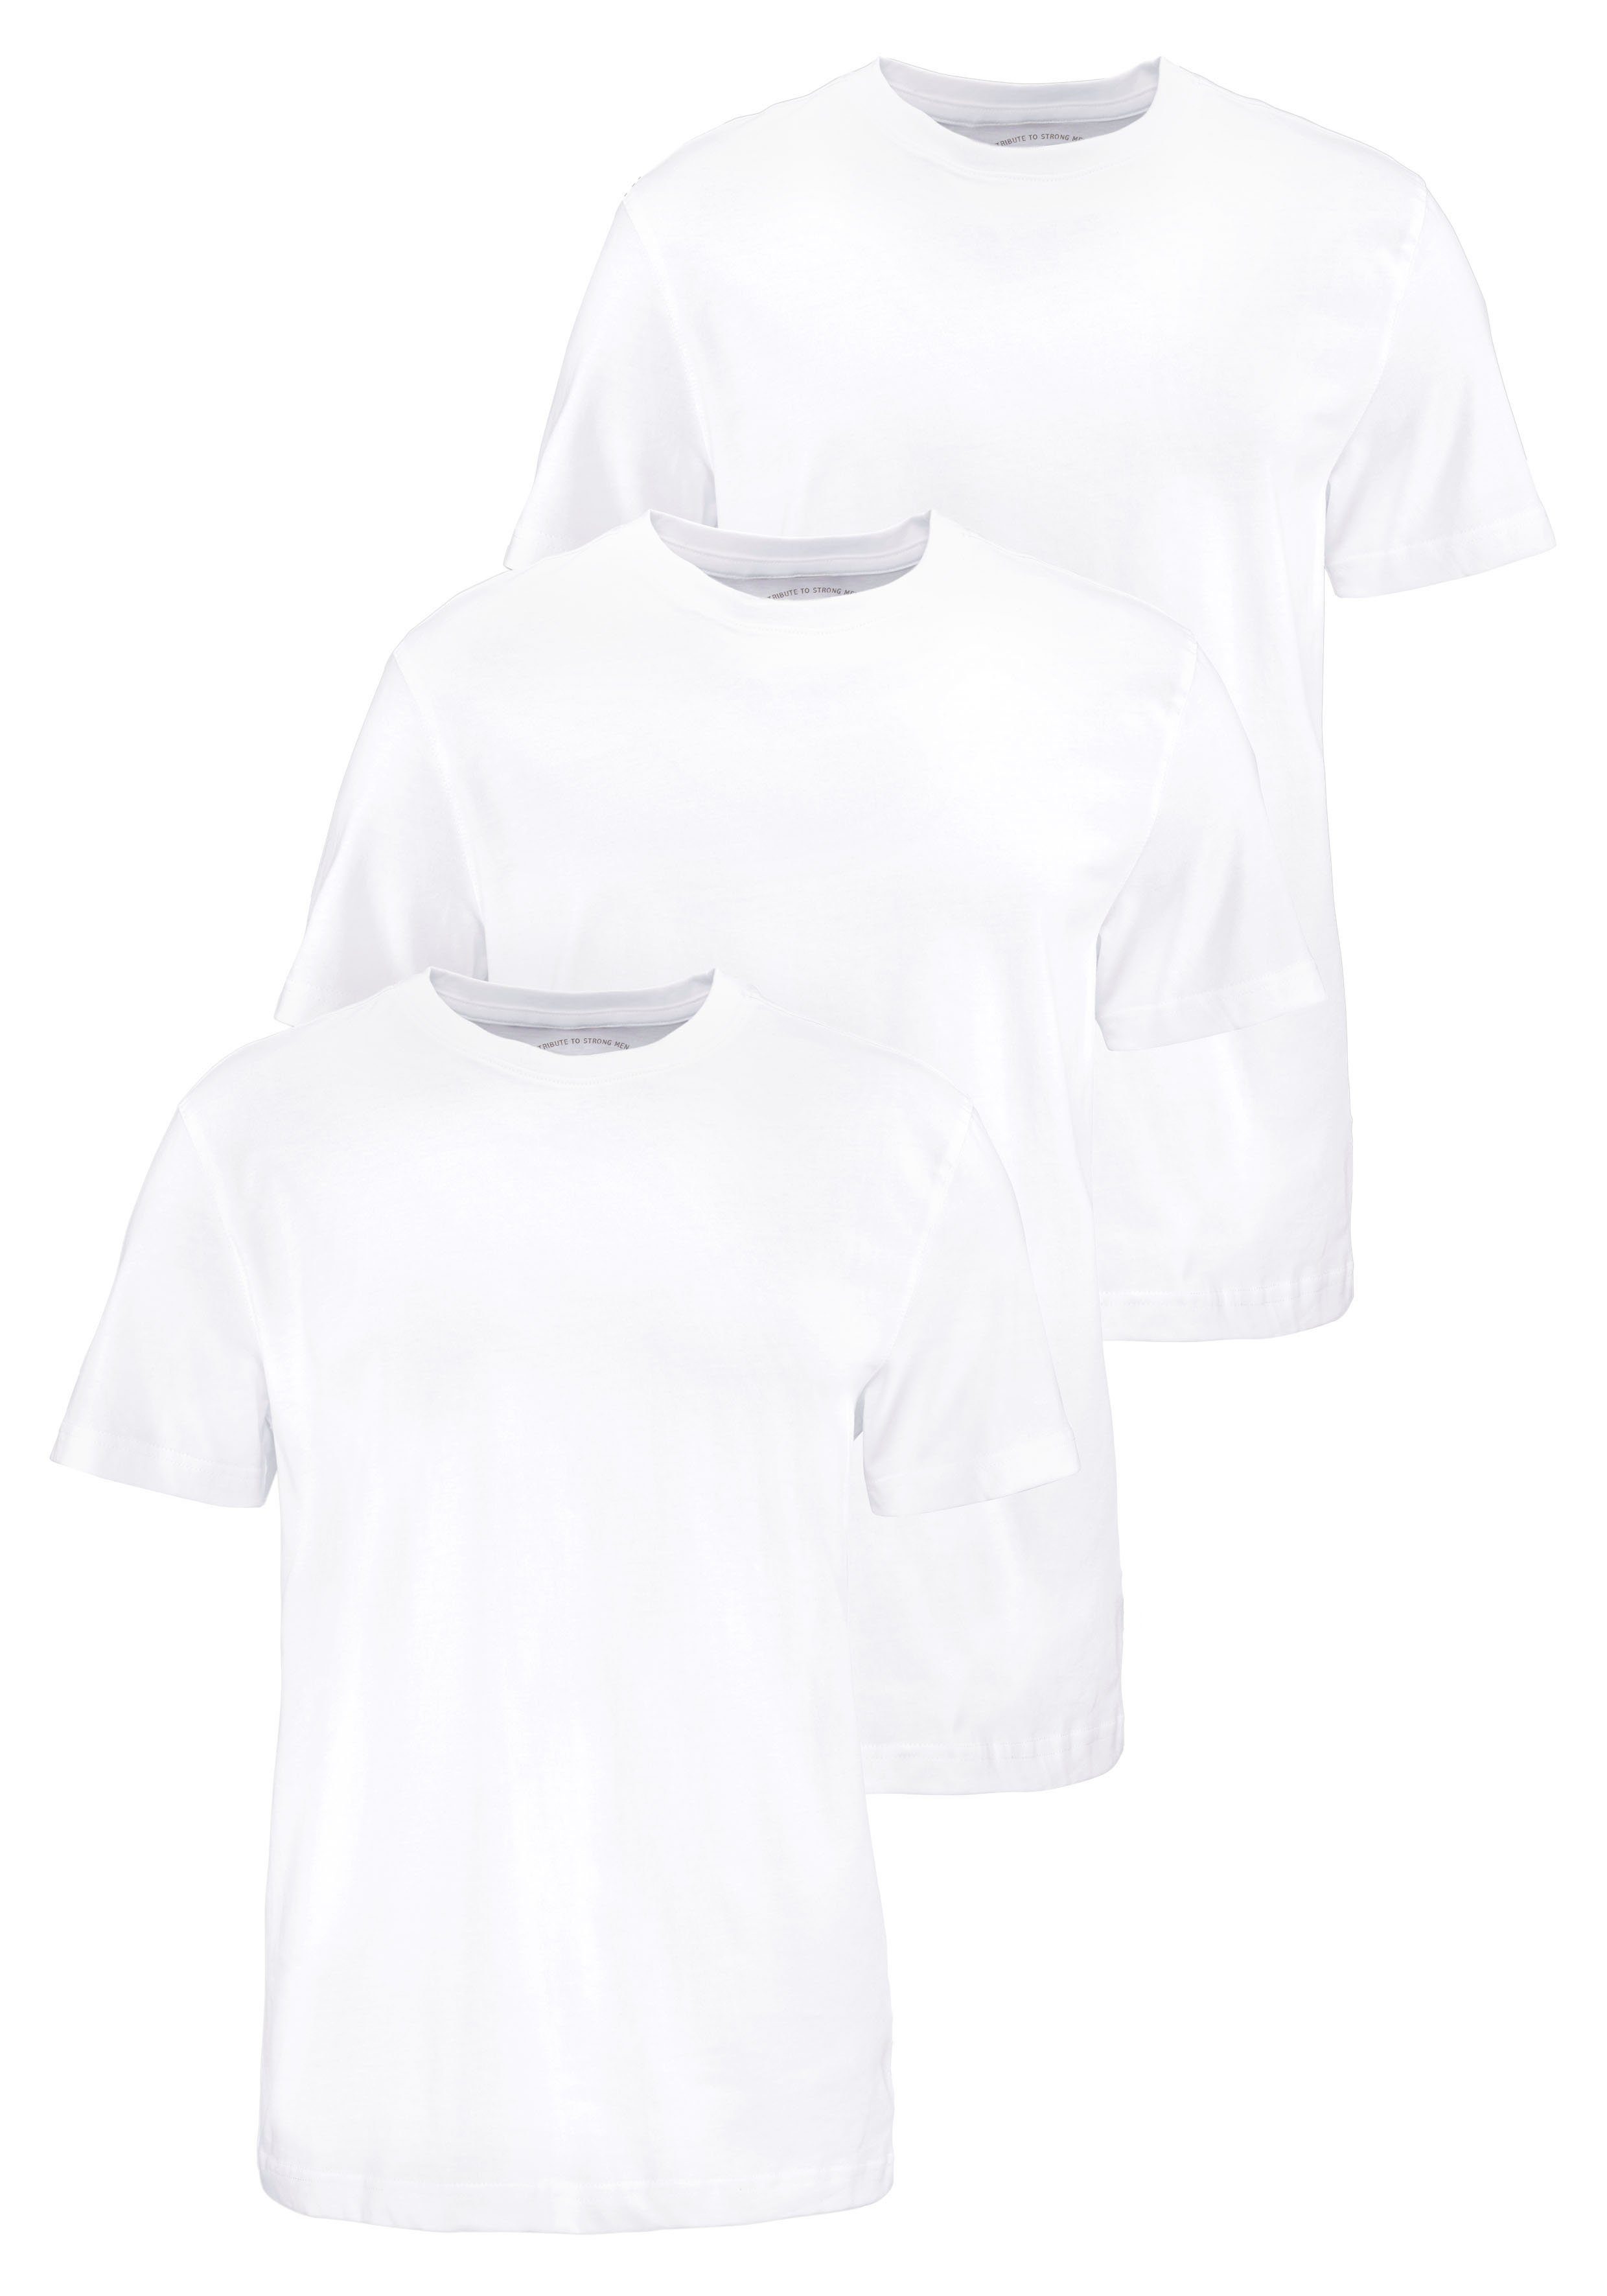 man's world t-shirt perfect als t-shirt om ergens onder te dragen (3-delig, set van 3) wit